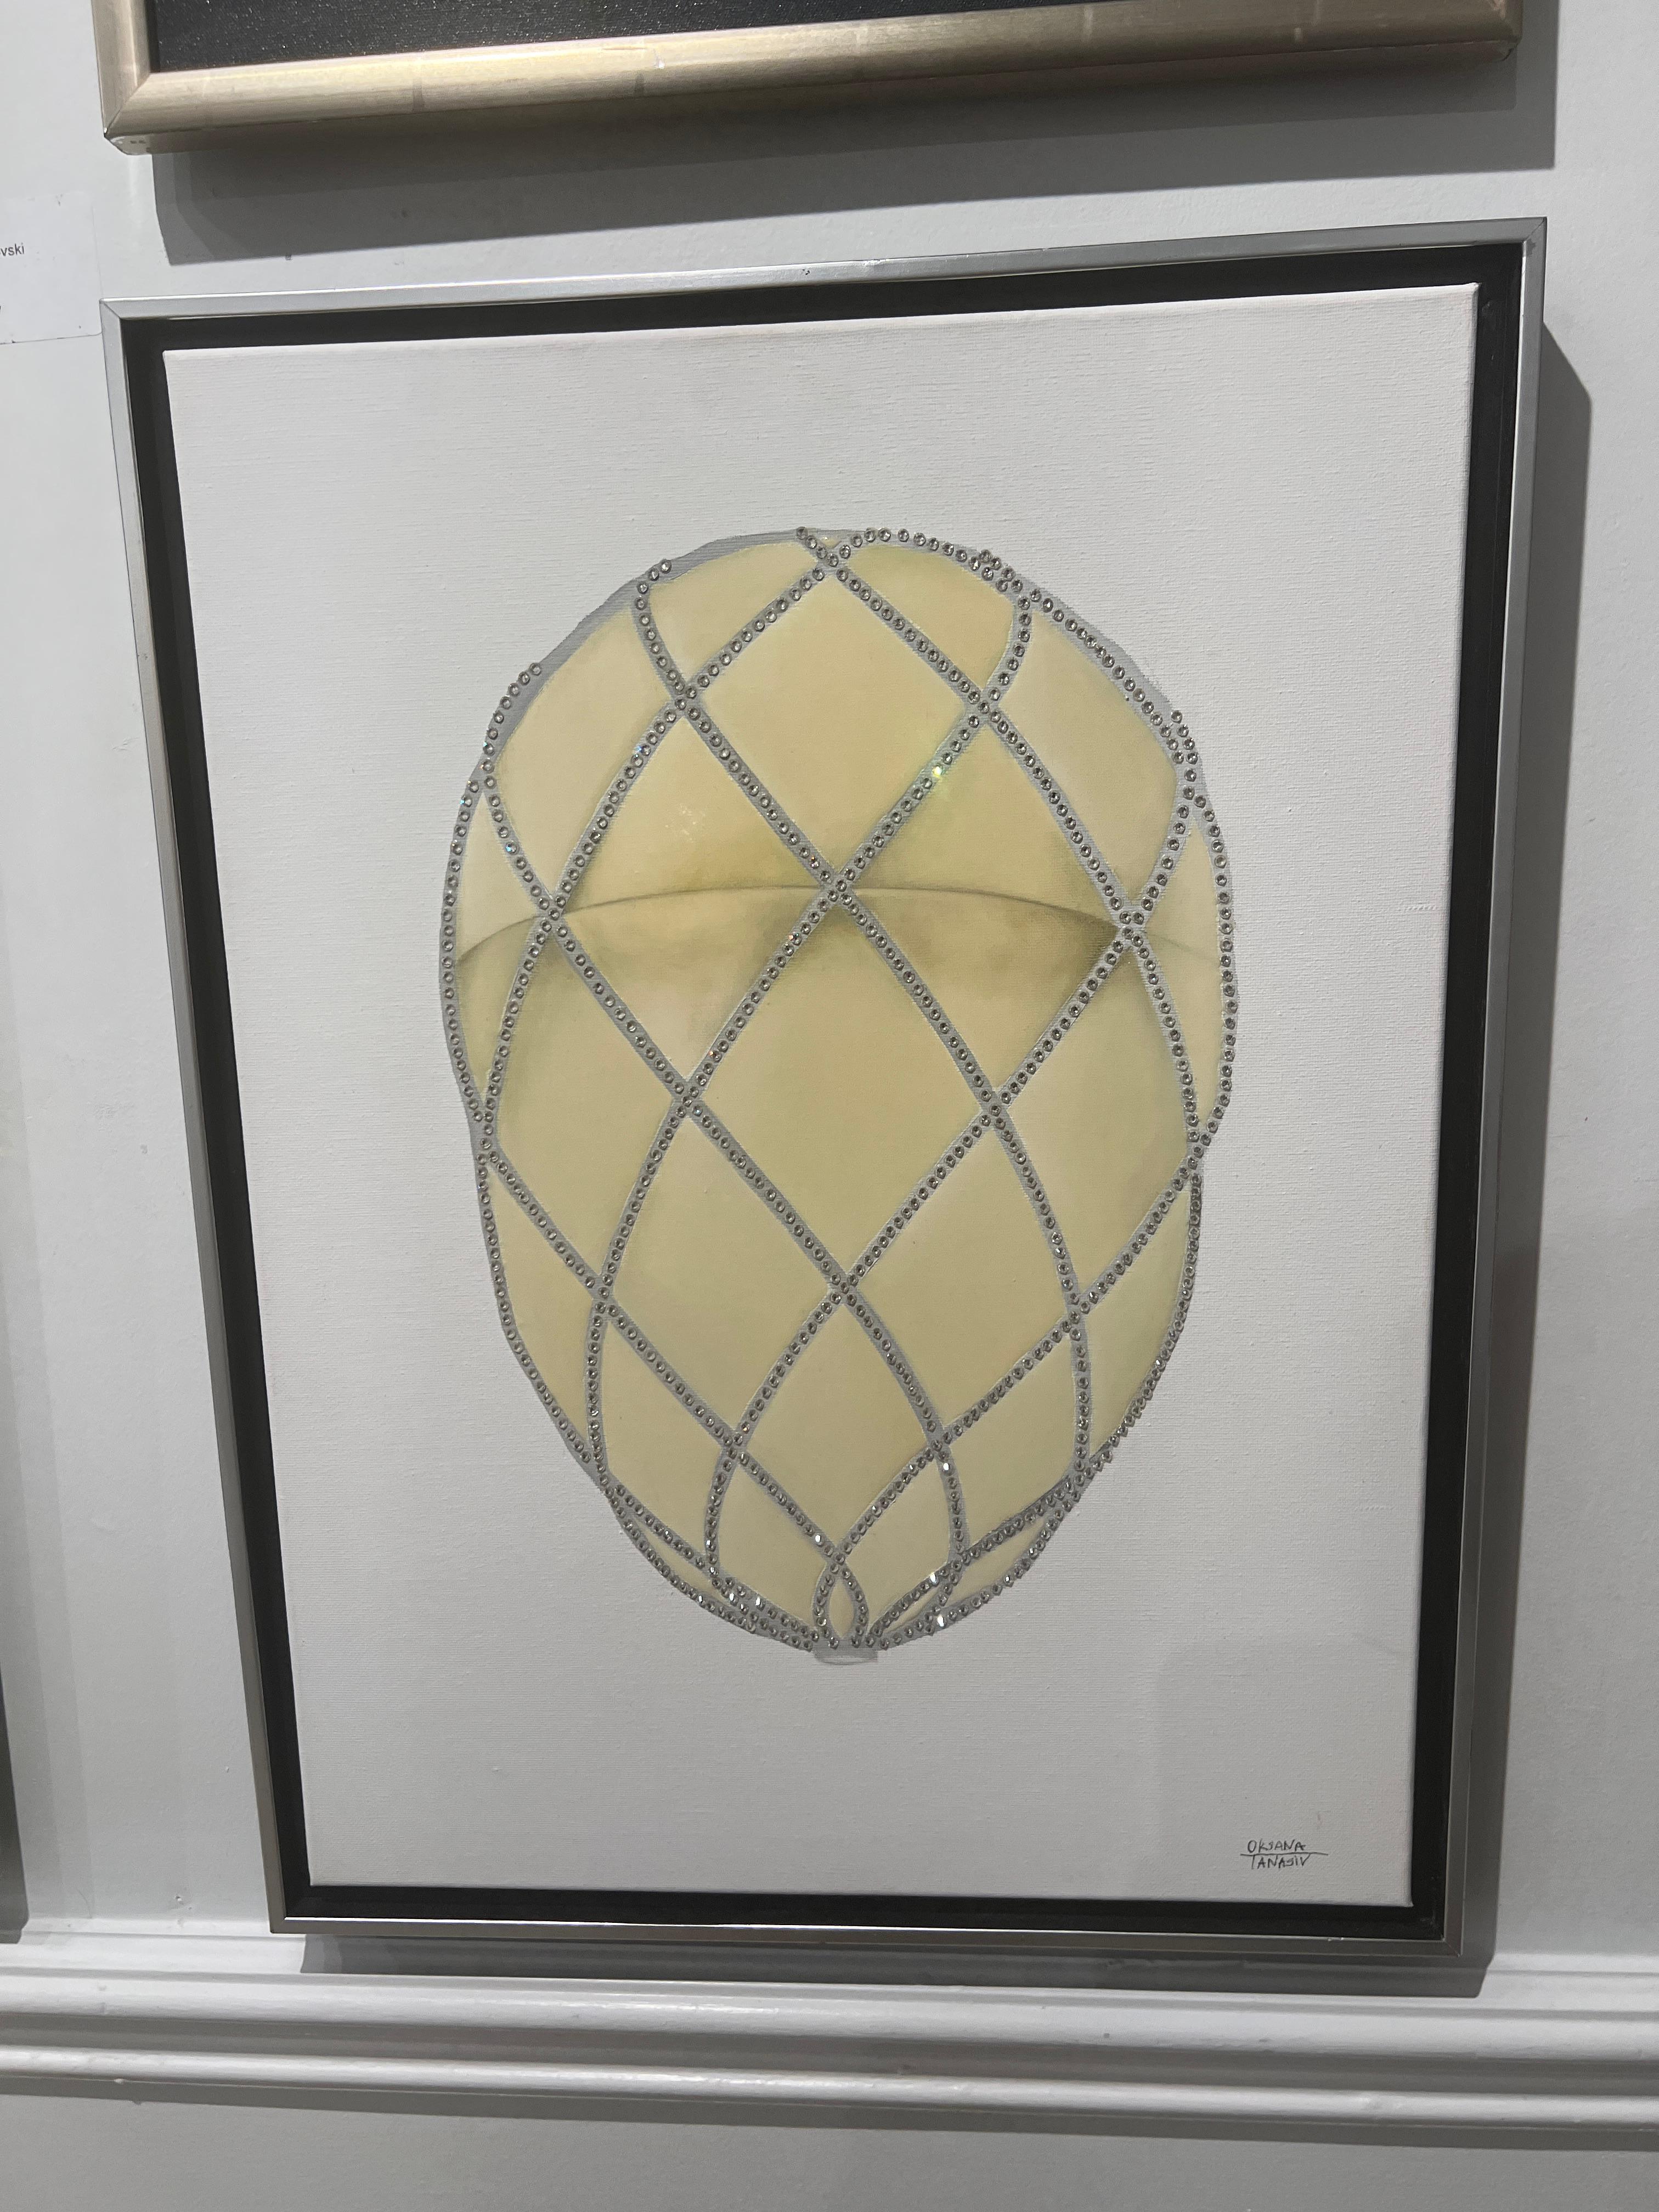 Faberge Diamond Trellis Egg 24″X18″ Mosaik aus Öl und Swarovski®-Kristallen, Epoxy auf Leinwand. Gerahmt. 2016

Die Einzigartigkeit dieses Stücks besteht darin, dass es von Hand mit einem Mosaik aus Swarovski-Kristallen verziert wurde, wobei jeder